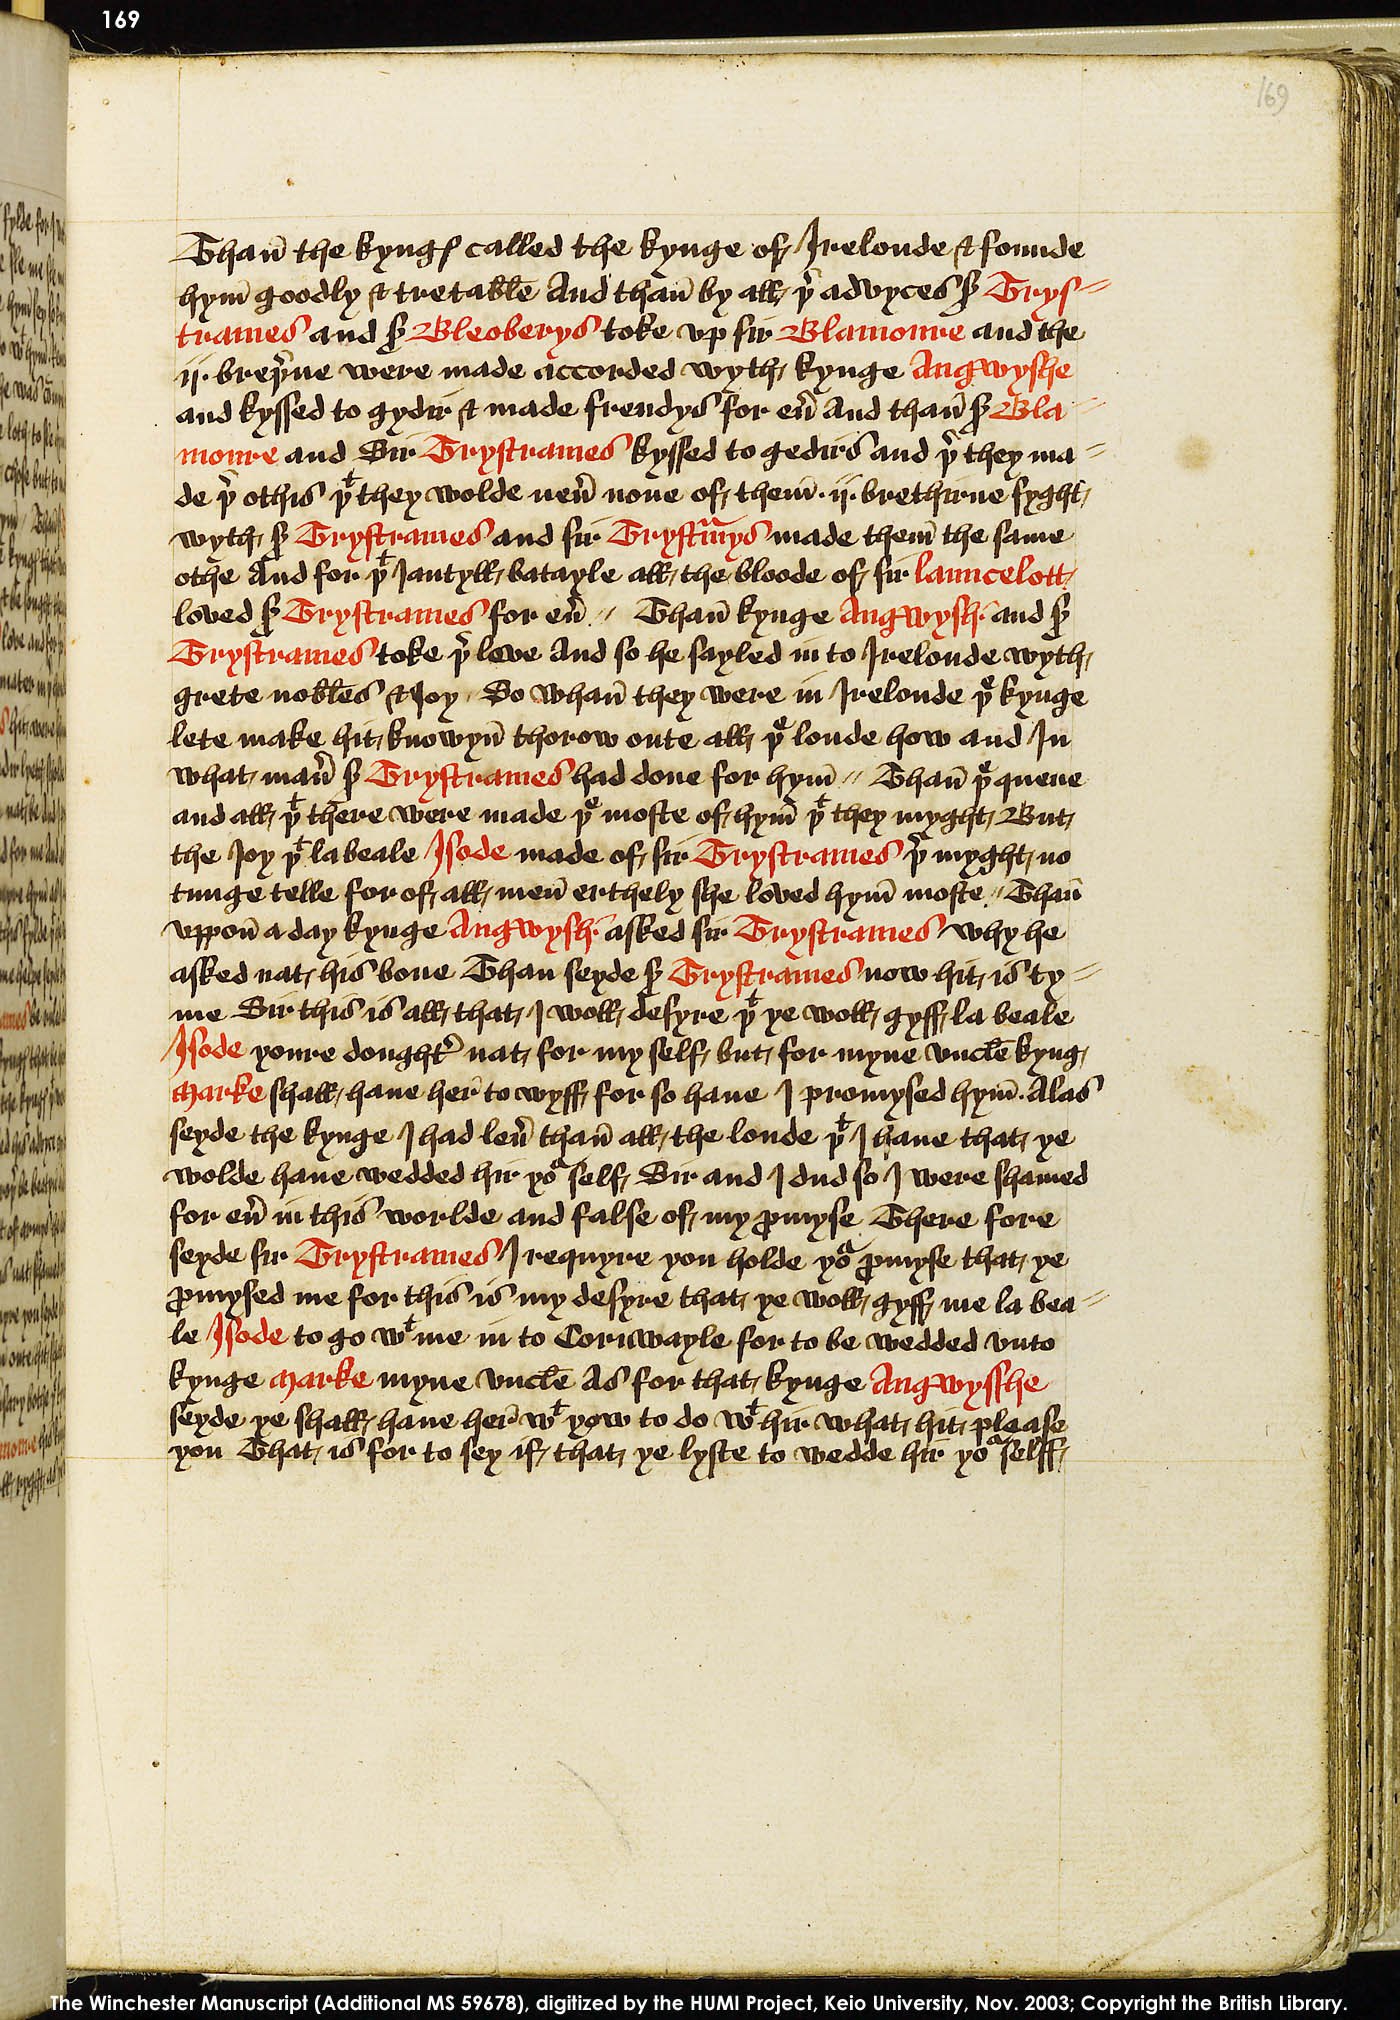 Folio 169r